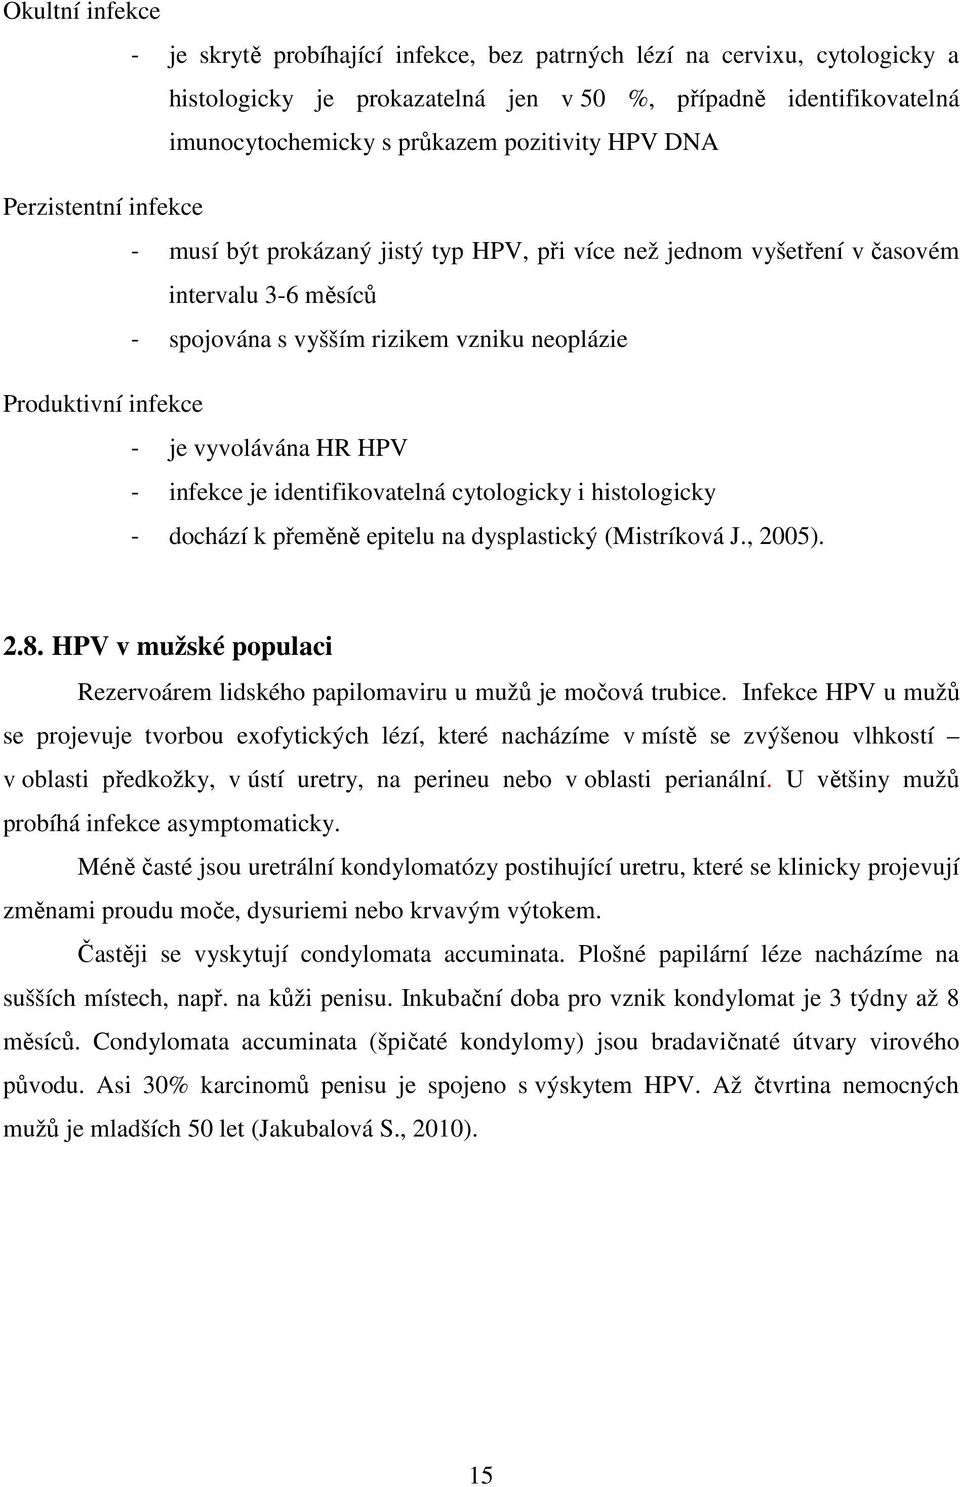 infekce - je vyvolávána HR HPV - infekce je identifikovatelná cytologicky i histologicky - dochází k přeměně epitelu na dysplastický (Mistríková J., 2005). 2.8.